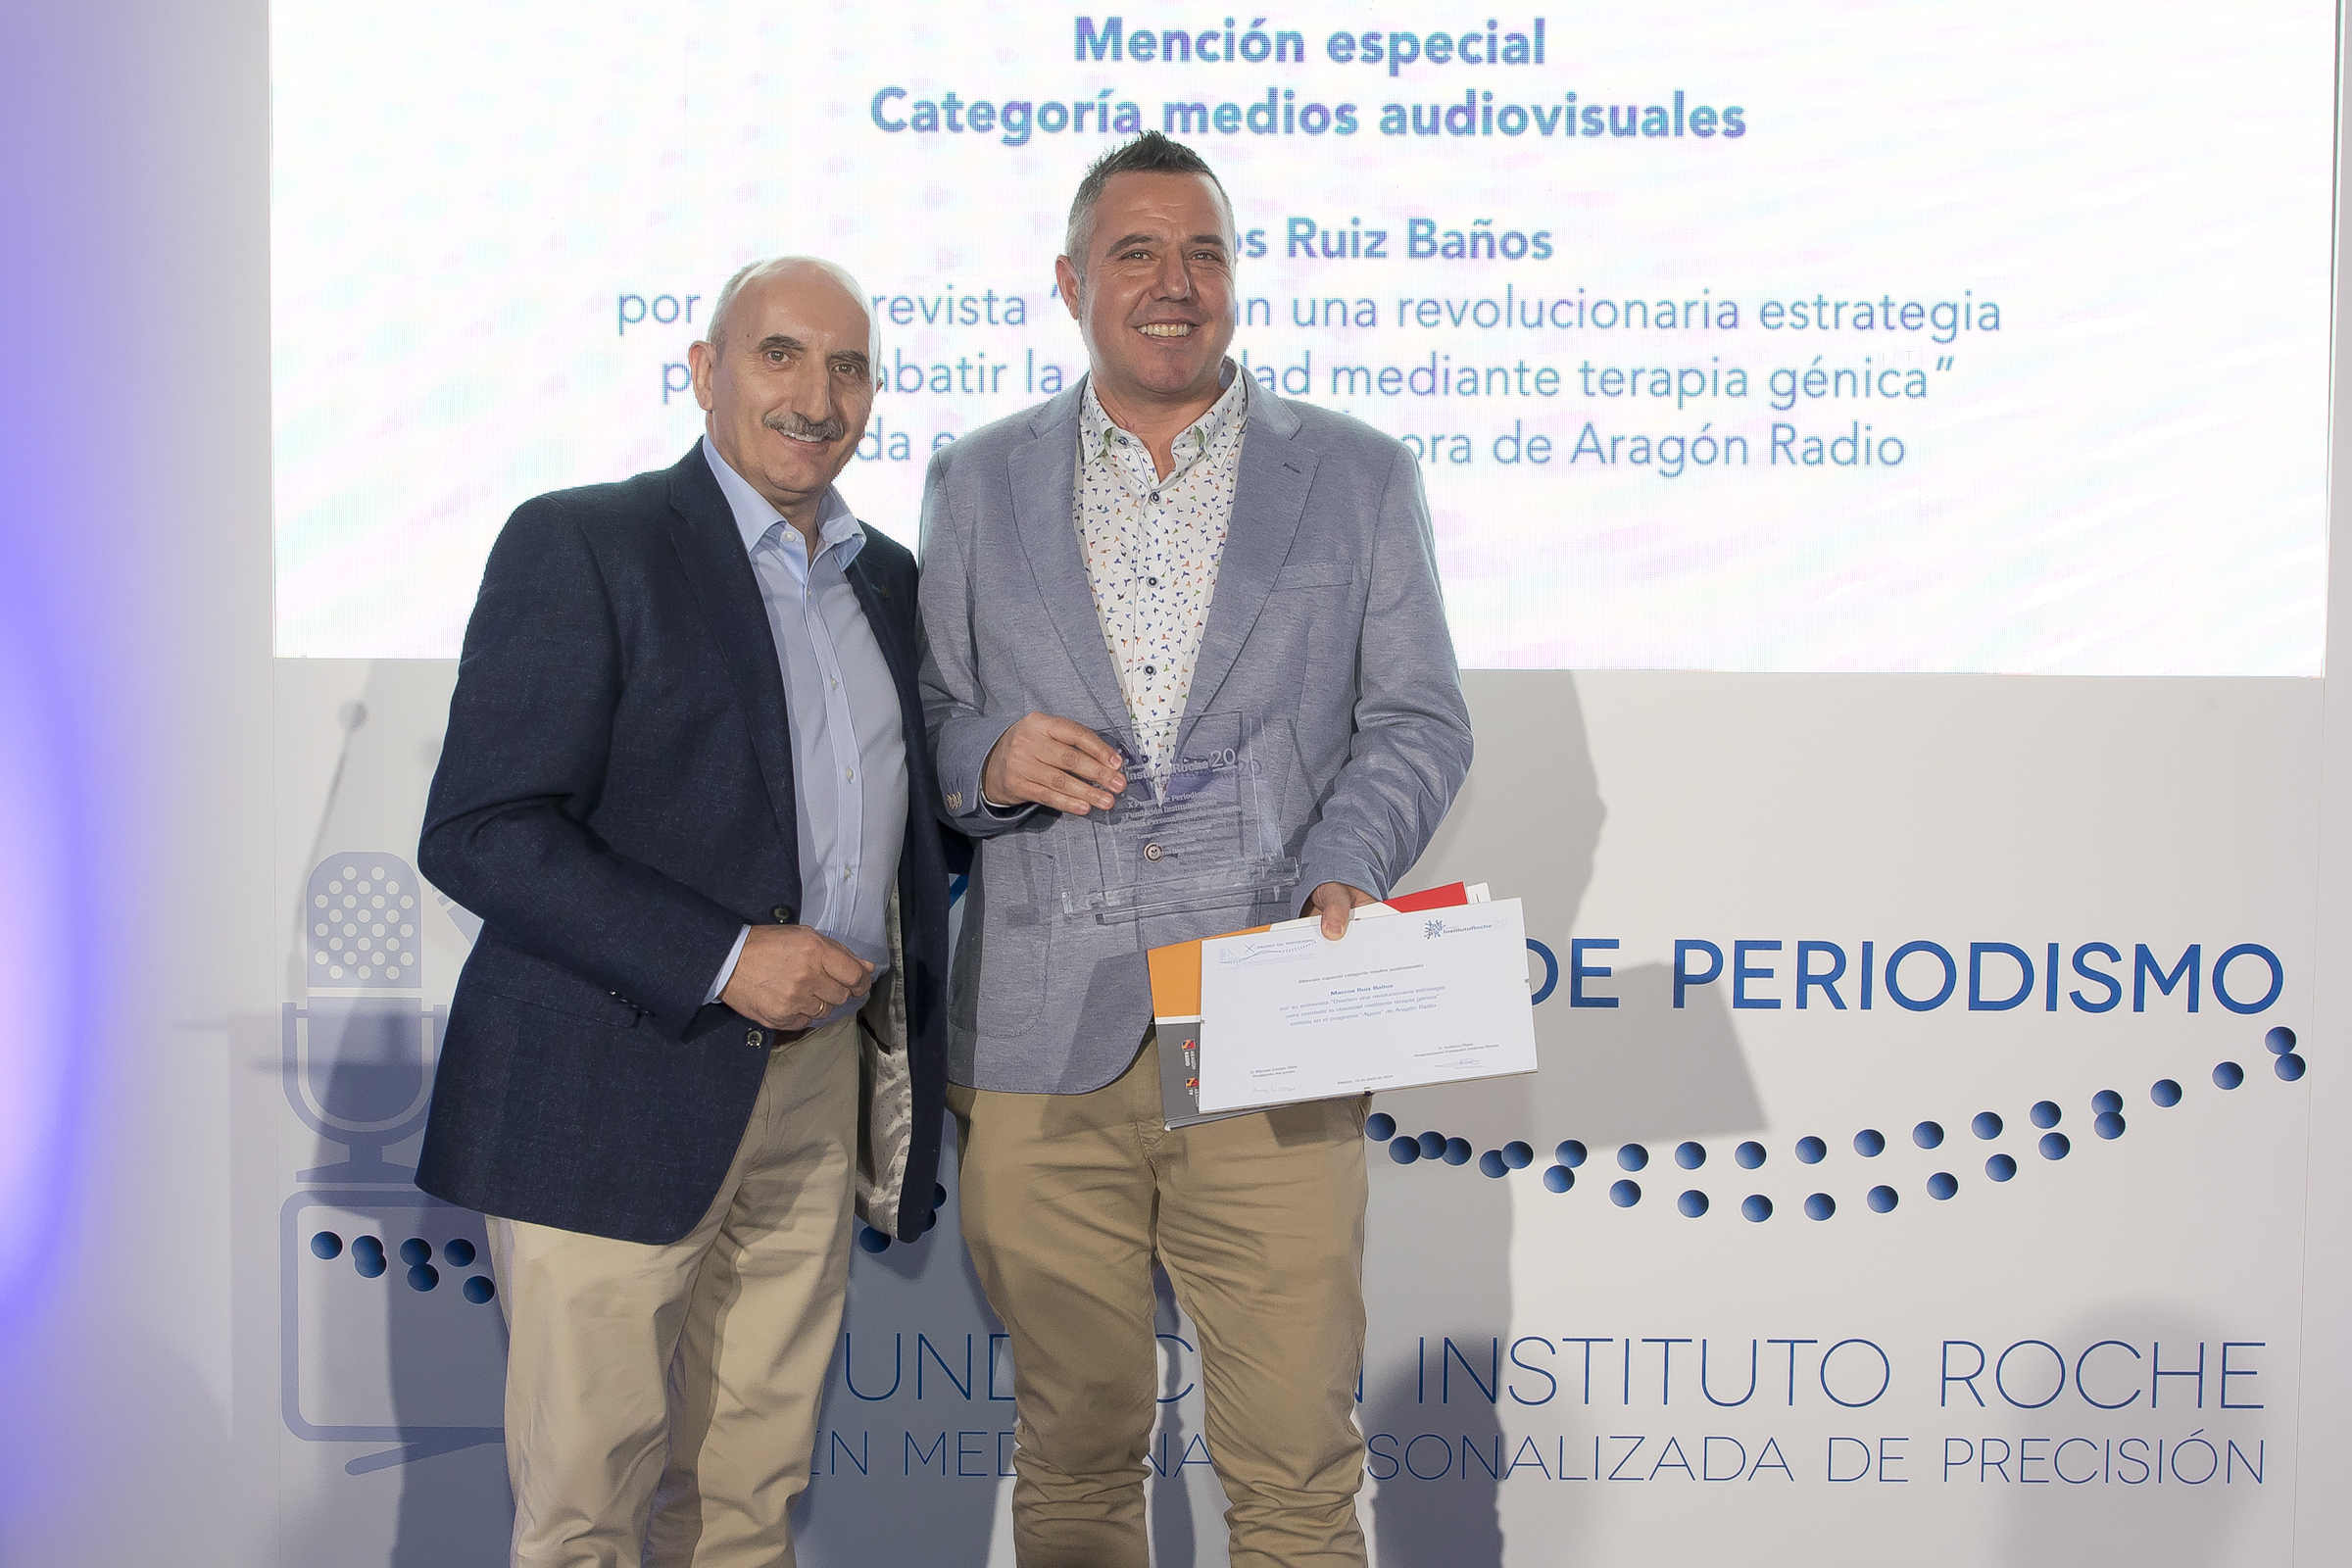 Alipio Gutierrez miembro del Jurado, junto con marcos Ruiz ganador de la mencion especial en medios audiovisuales